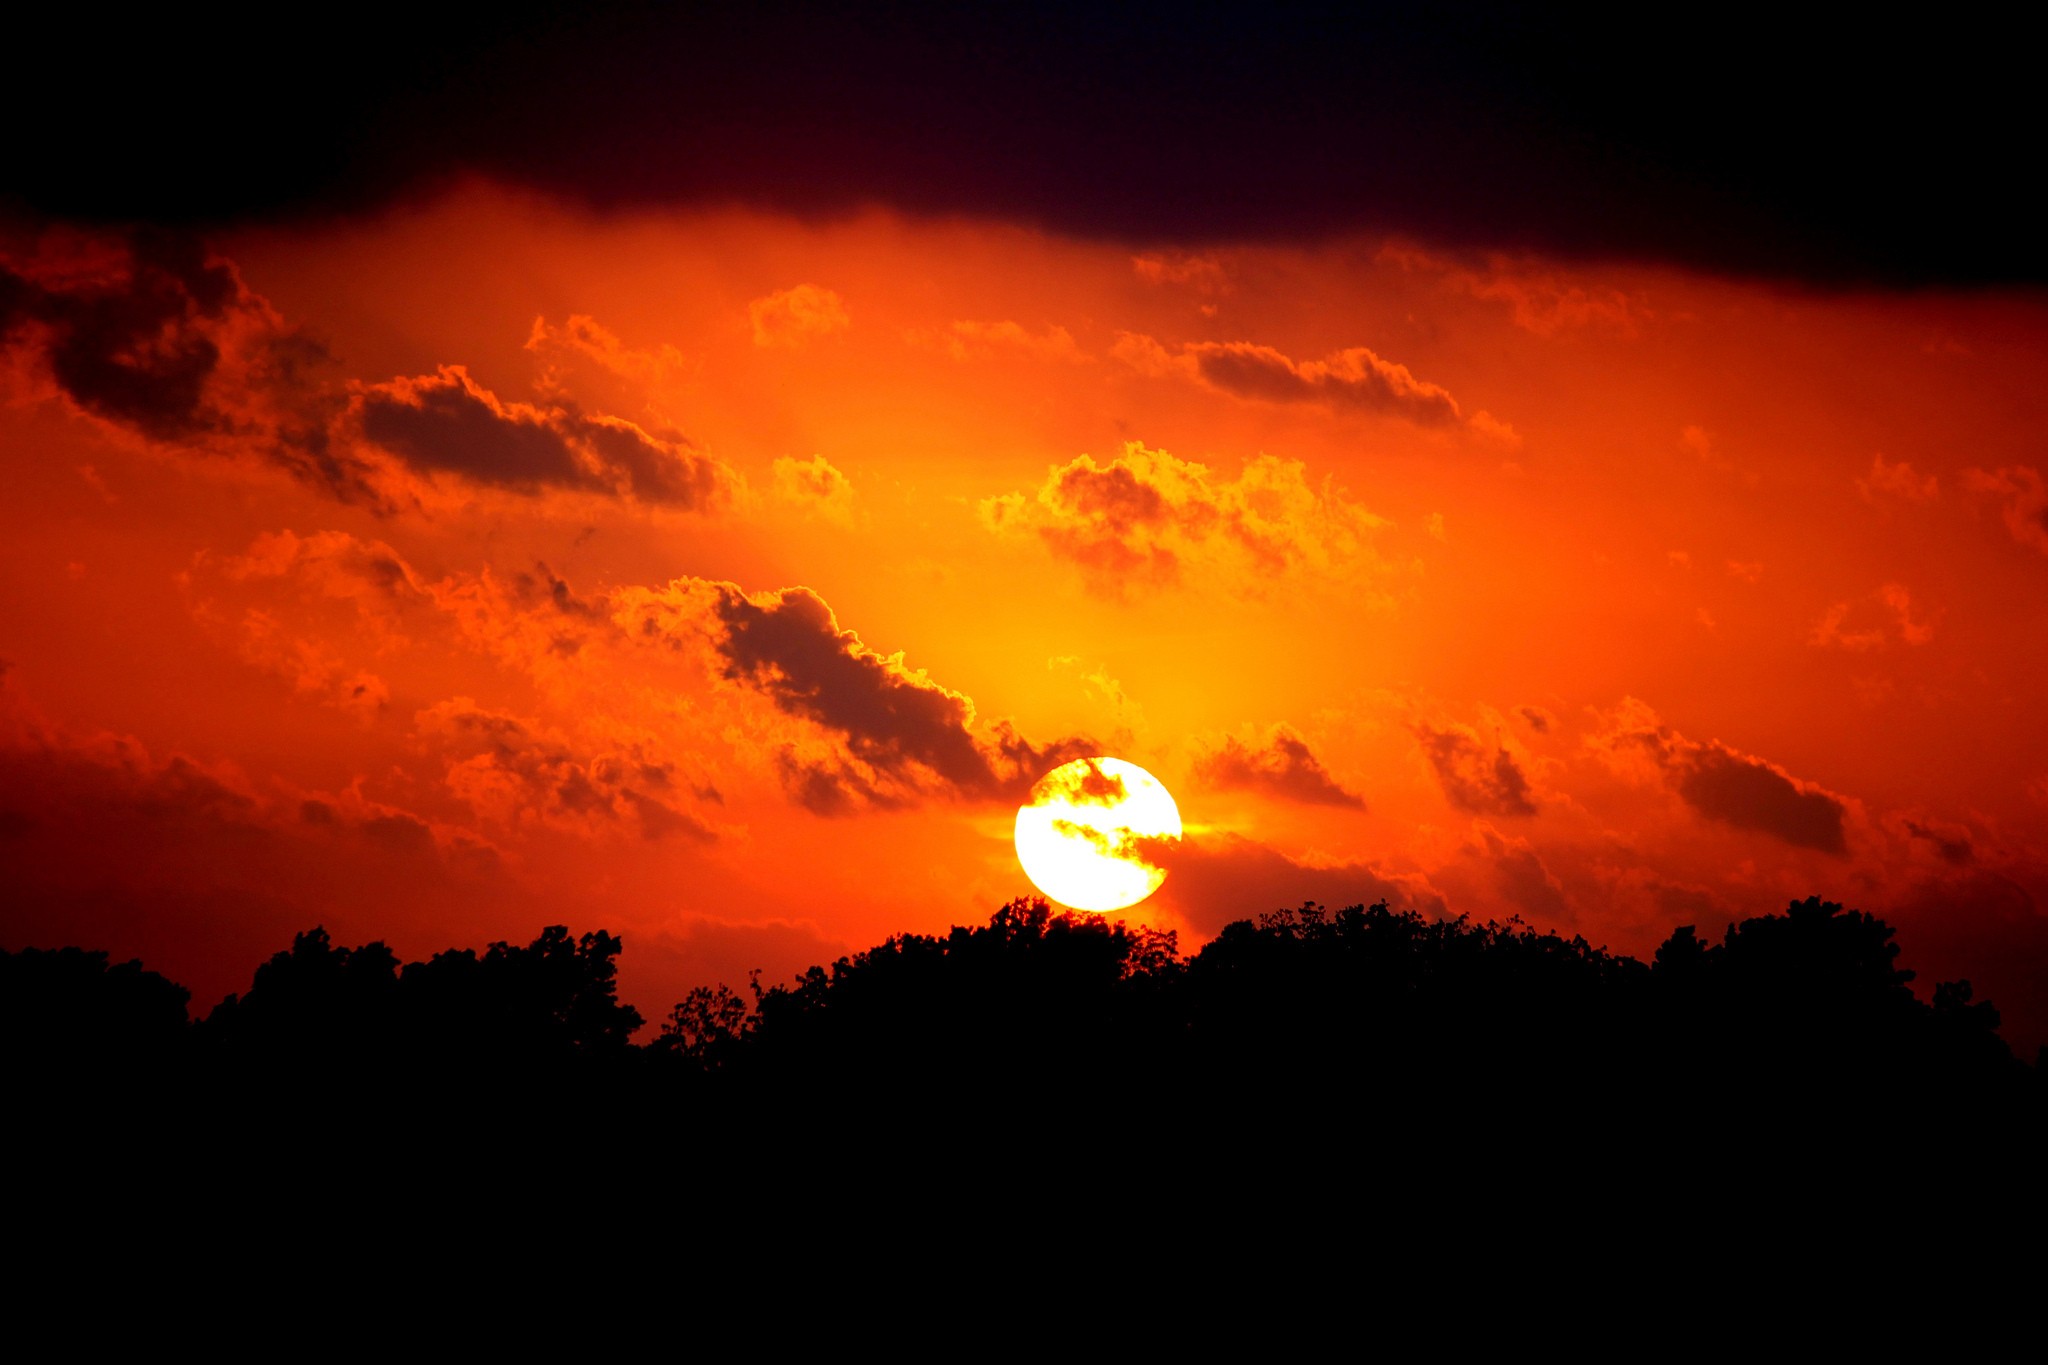 General 2048x1365 nature orange sky skyscape silhouette dark sunlight Sun clouds low light